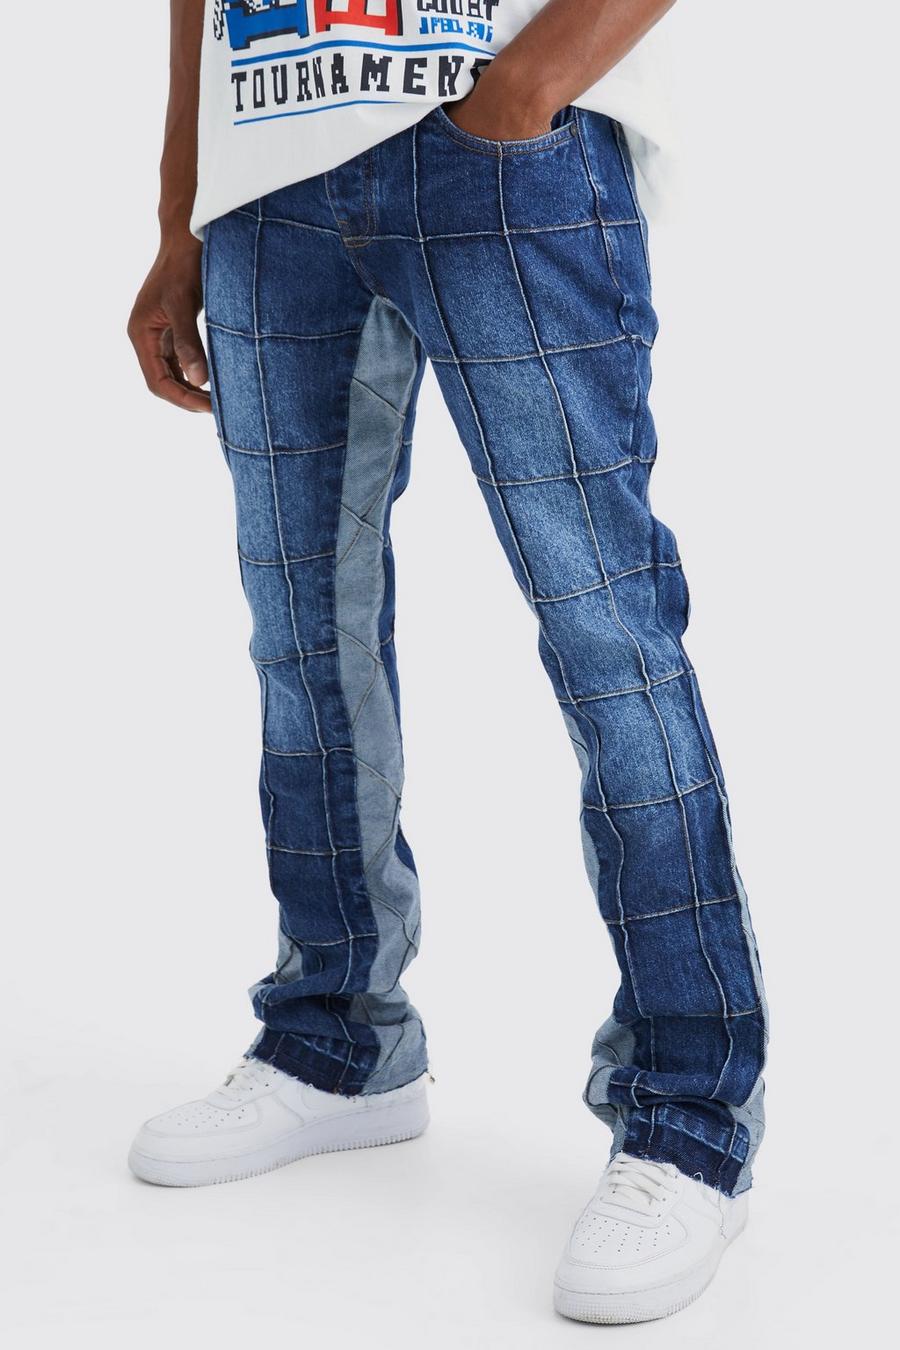 Jeans Slim Fit in denim rigido con pannelli a zampa e inserti, Vintage blue